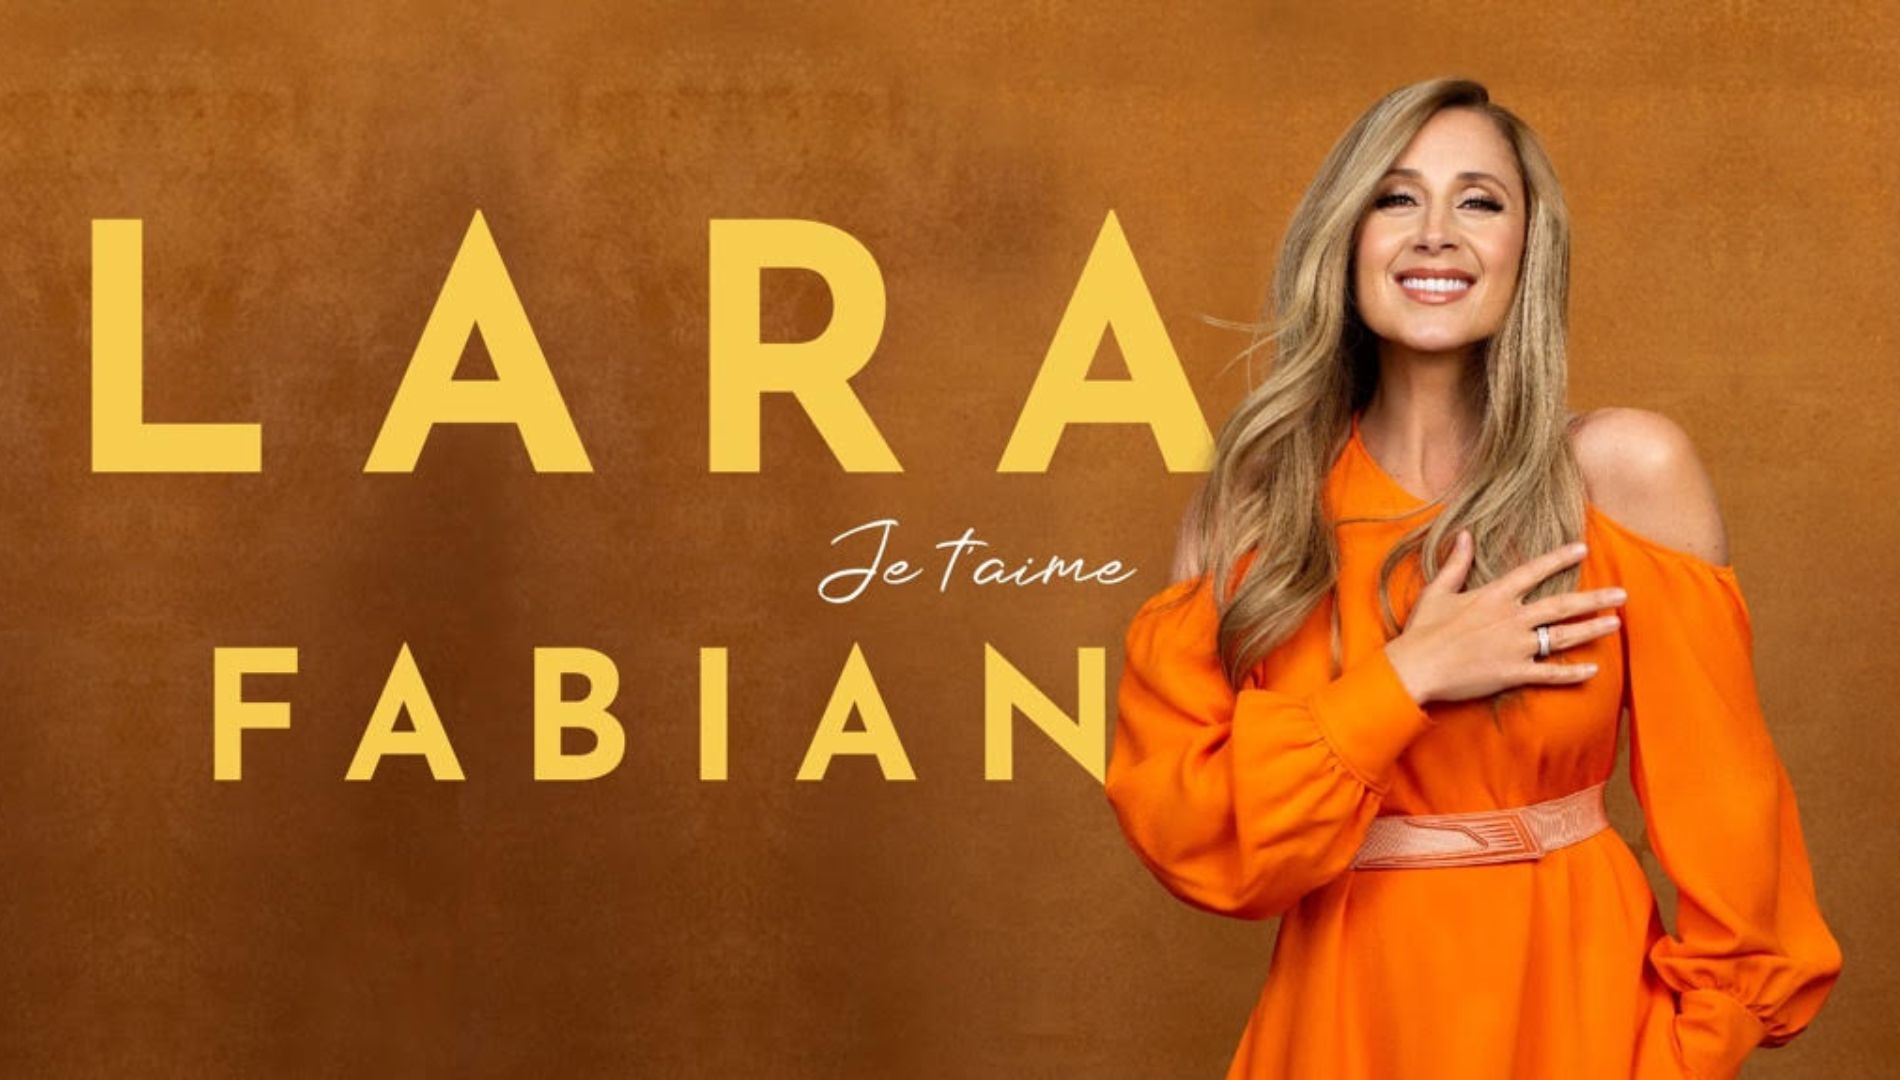 Lara Fabian annonce de nouvelles dates de tournée!